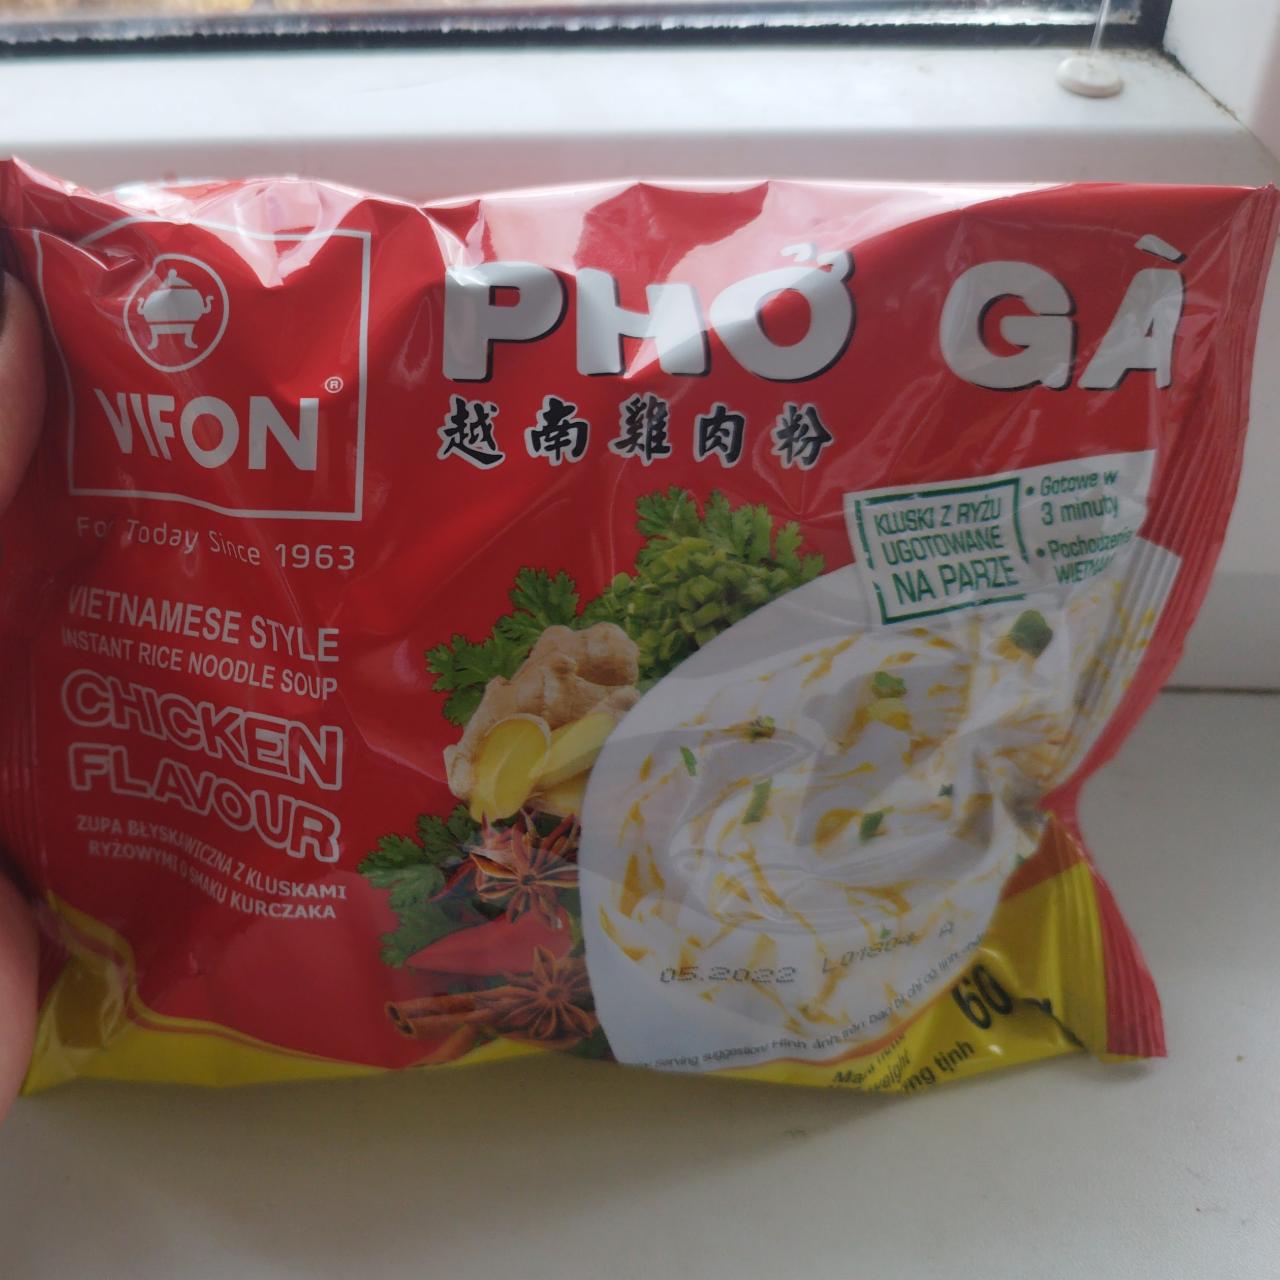 Fotografie - Phô Gá Instant Rice Noodle Soup Chicken flavour Vifon